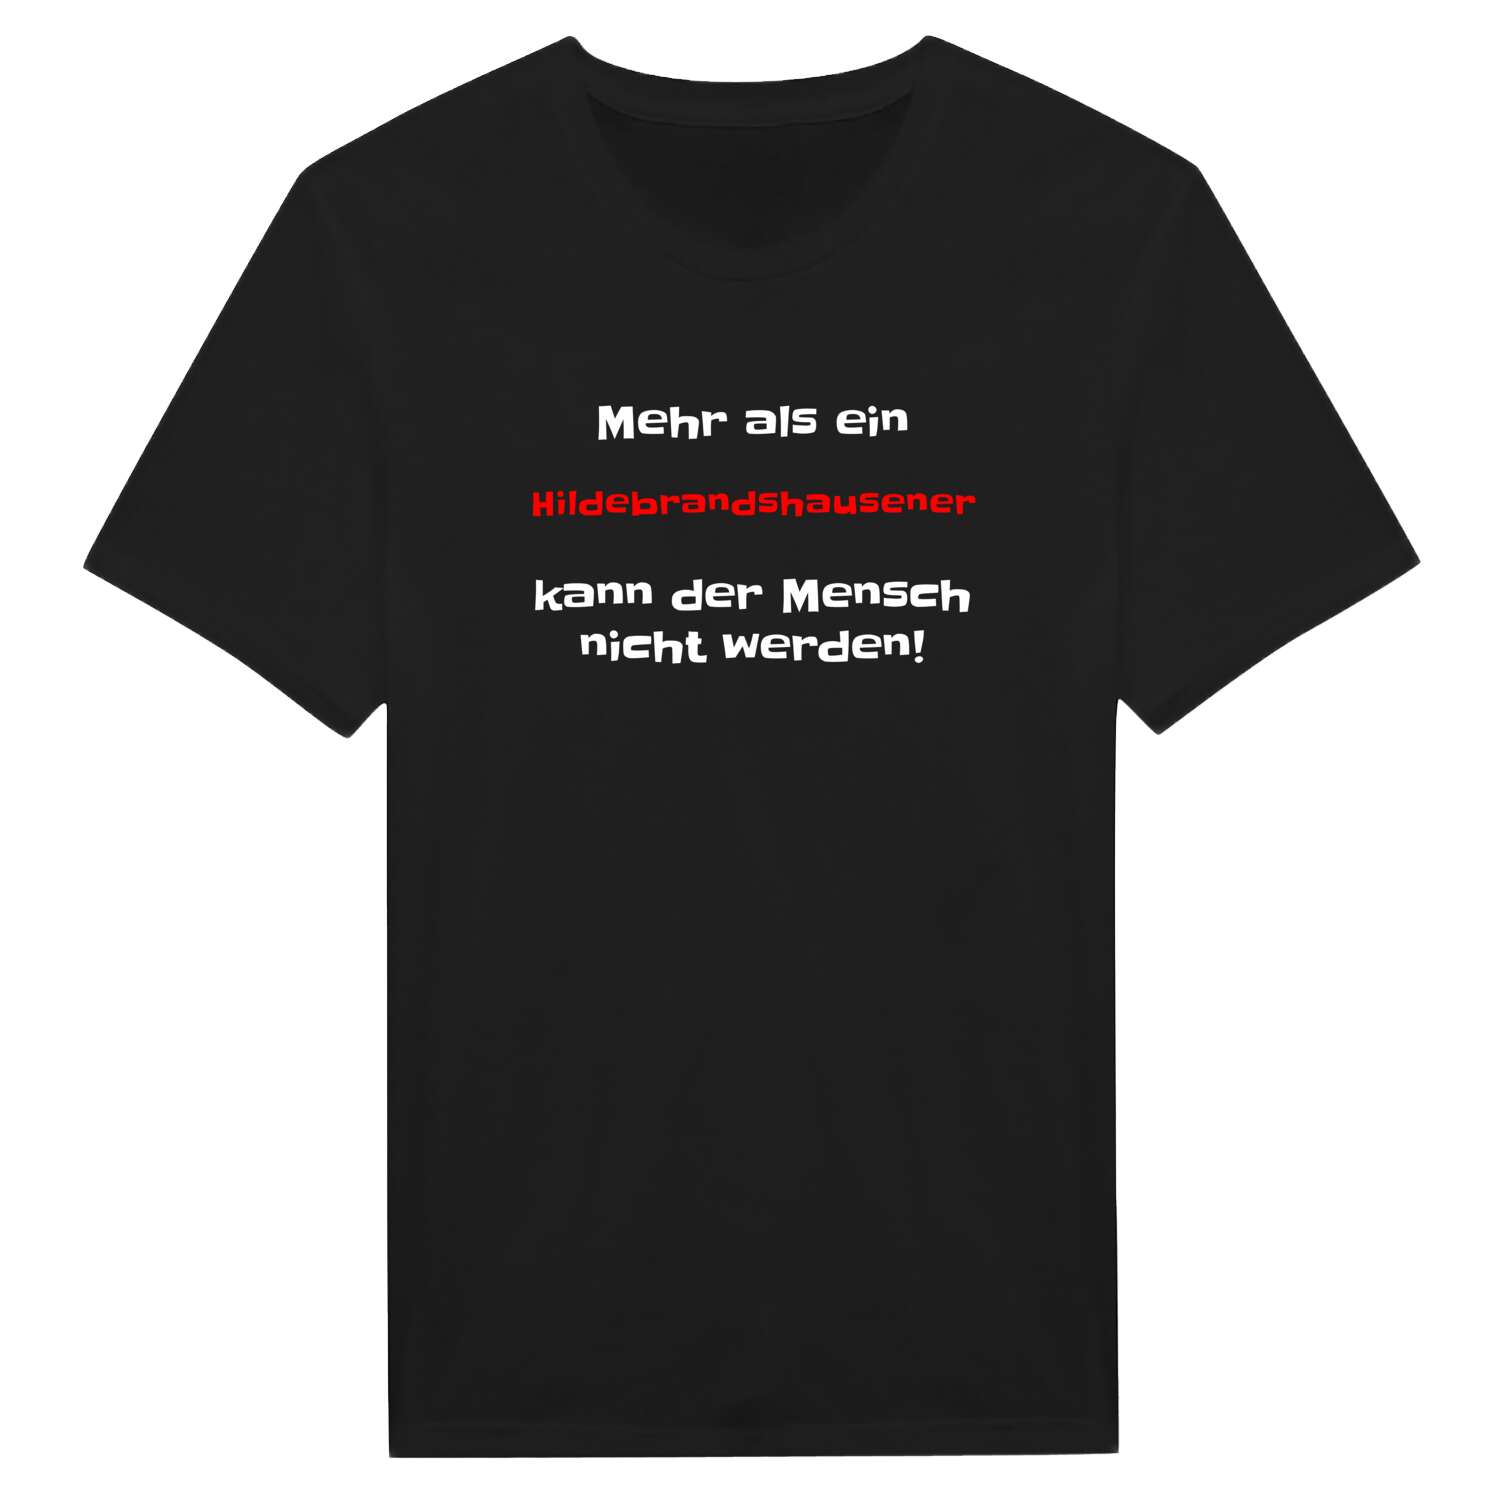 Hildebrandshausen T-Shirt »Mehr als ein«